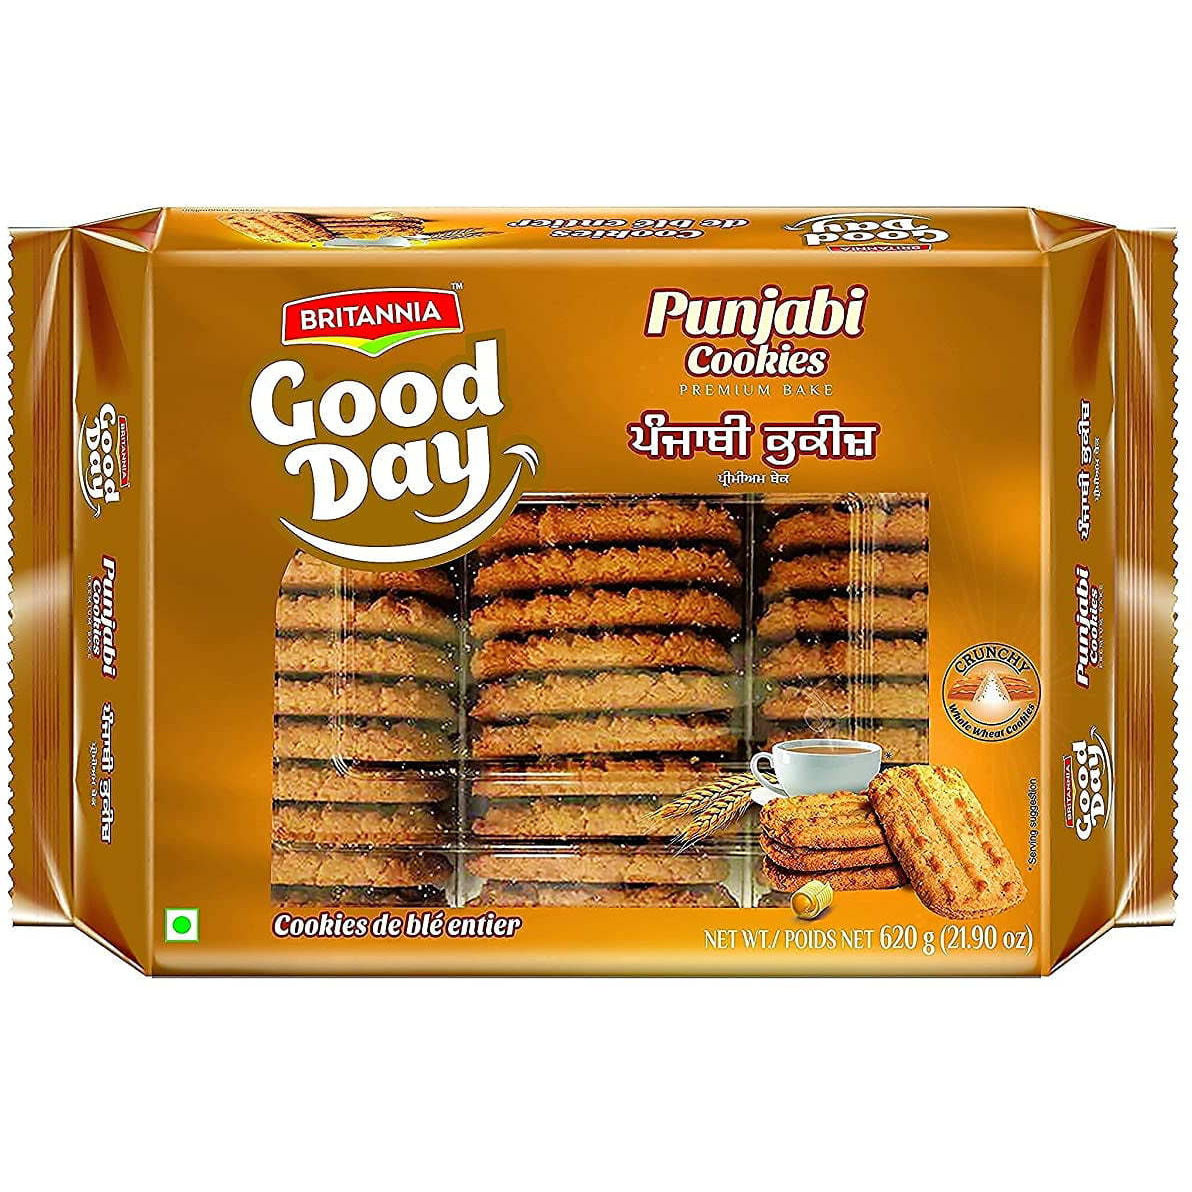 Case of 8 - Britannia Good Day Punjabi Cookies - 620 Gm (21.90 Oz)